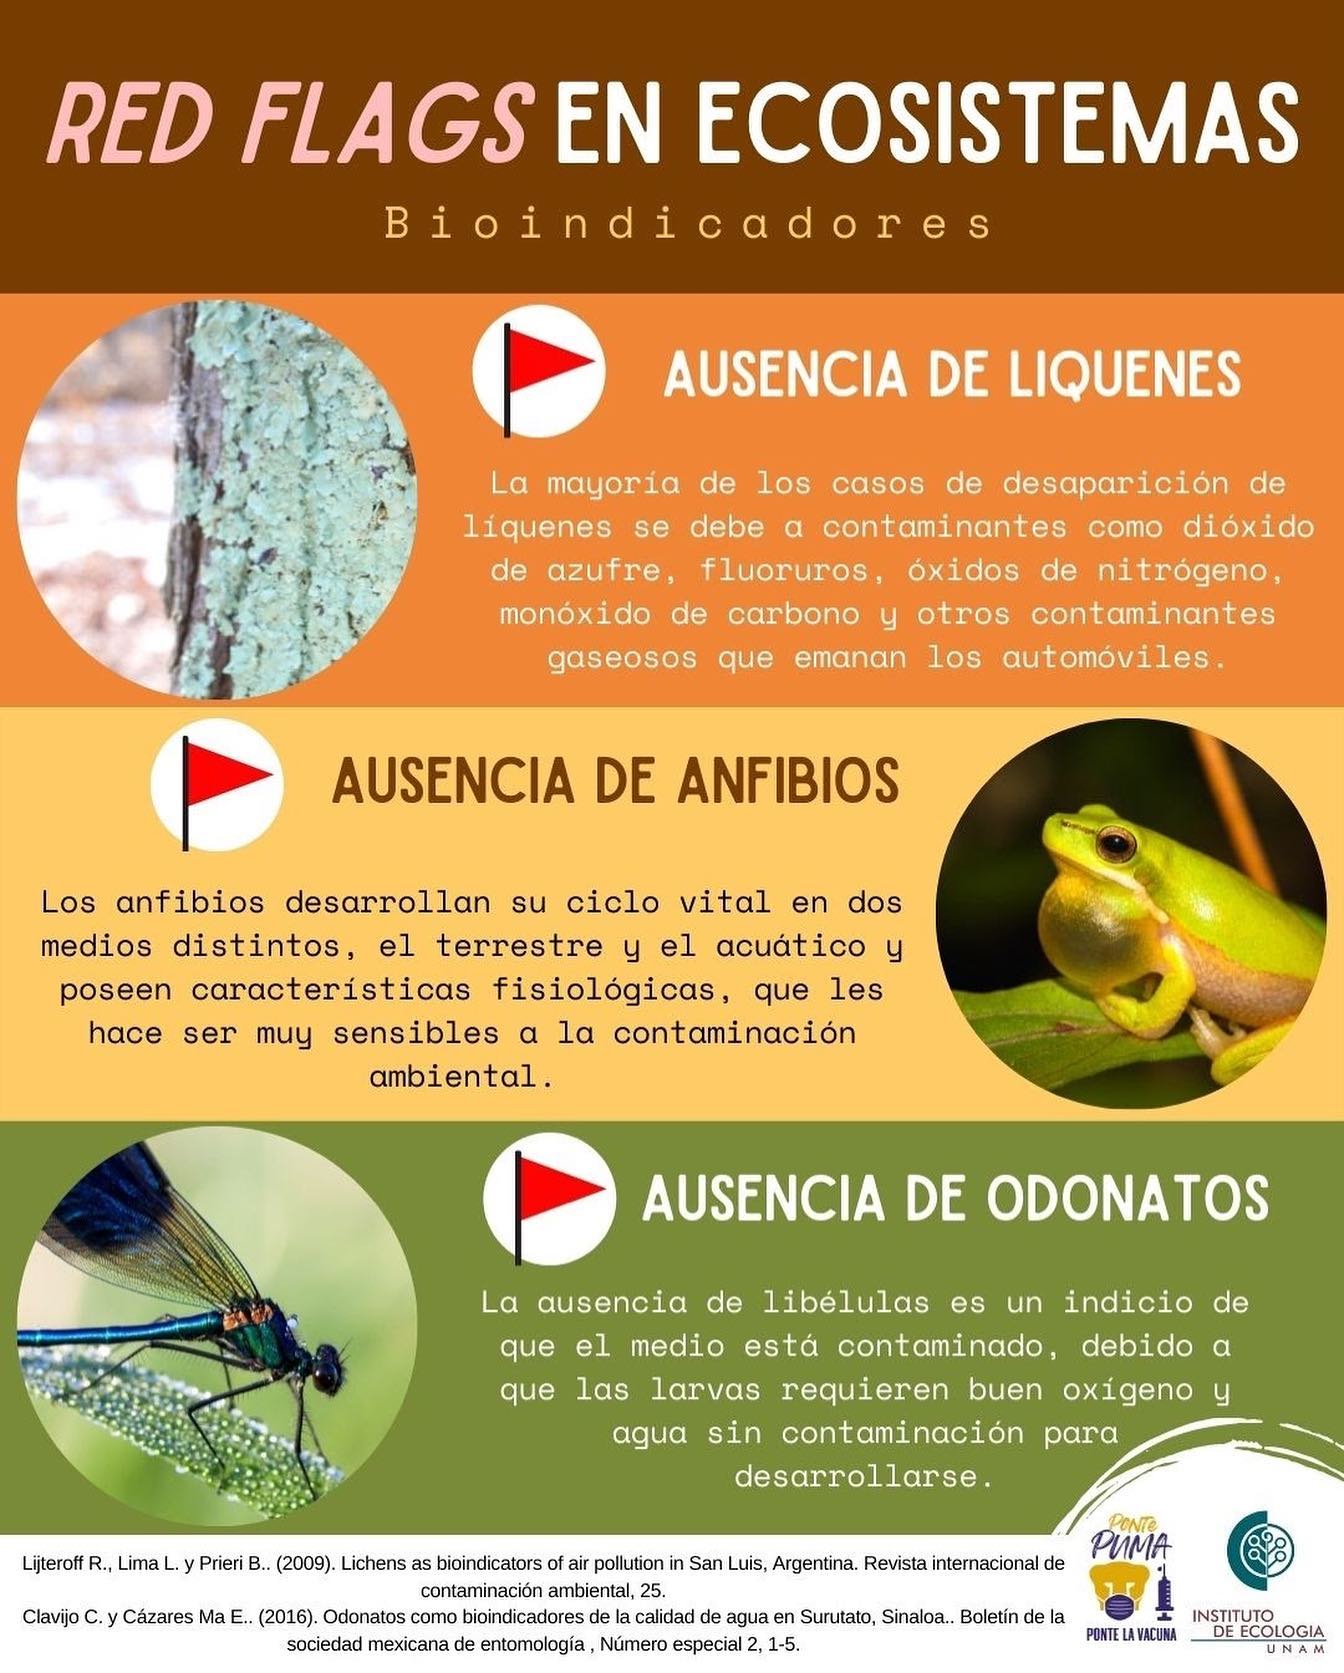 Red Flags en ecosistemas (Infografía)- Instituto de Ecología, UNAM